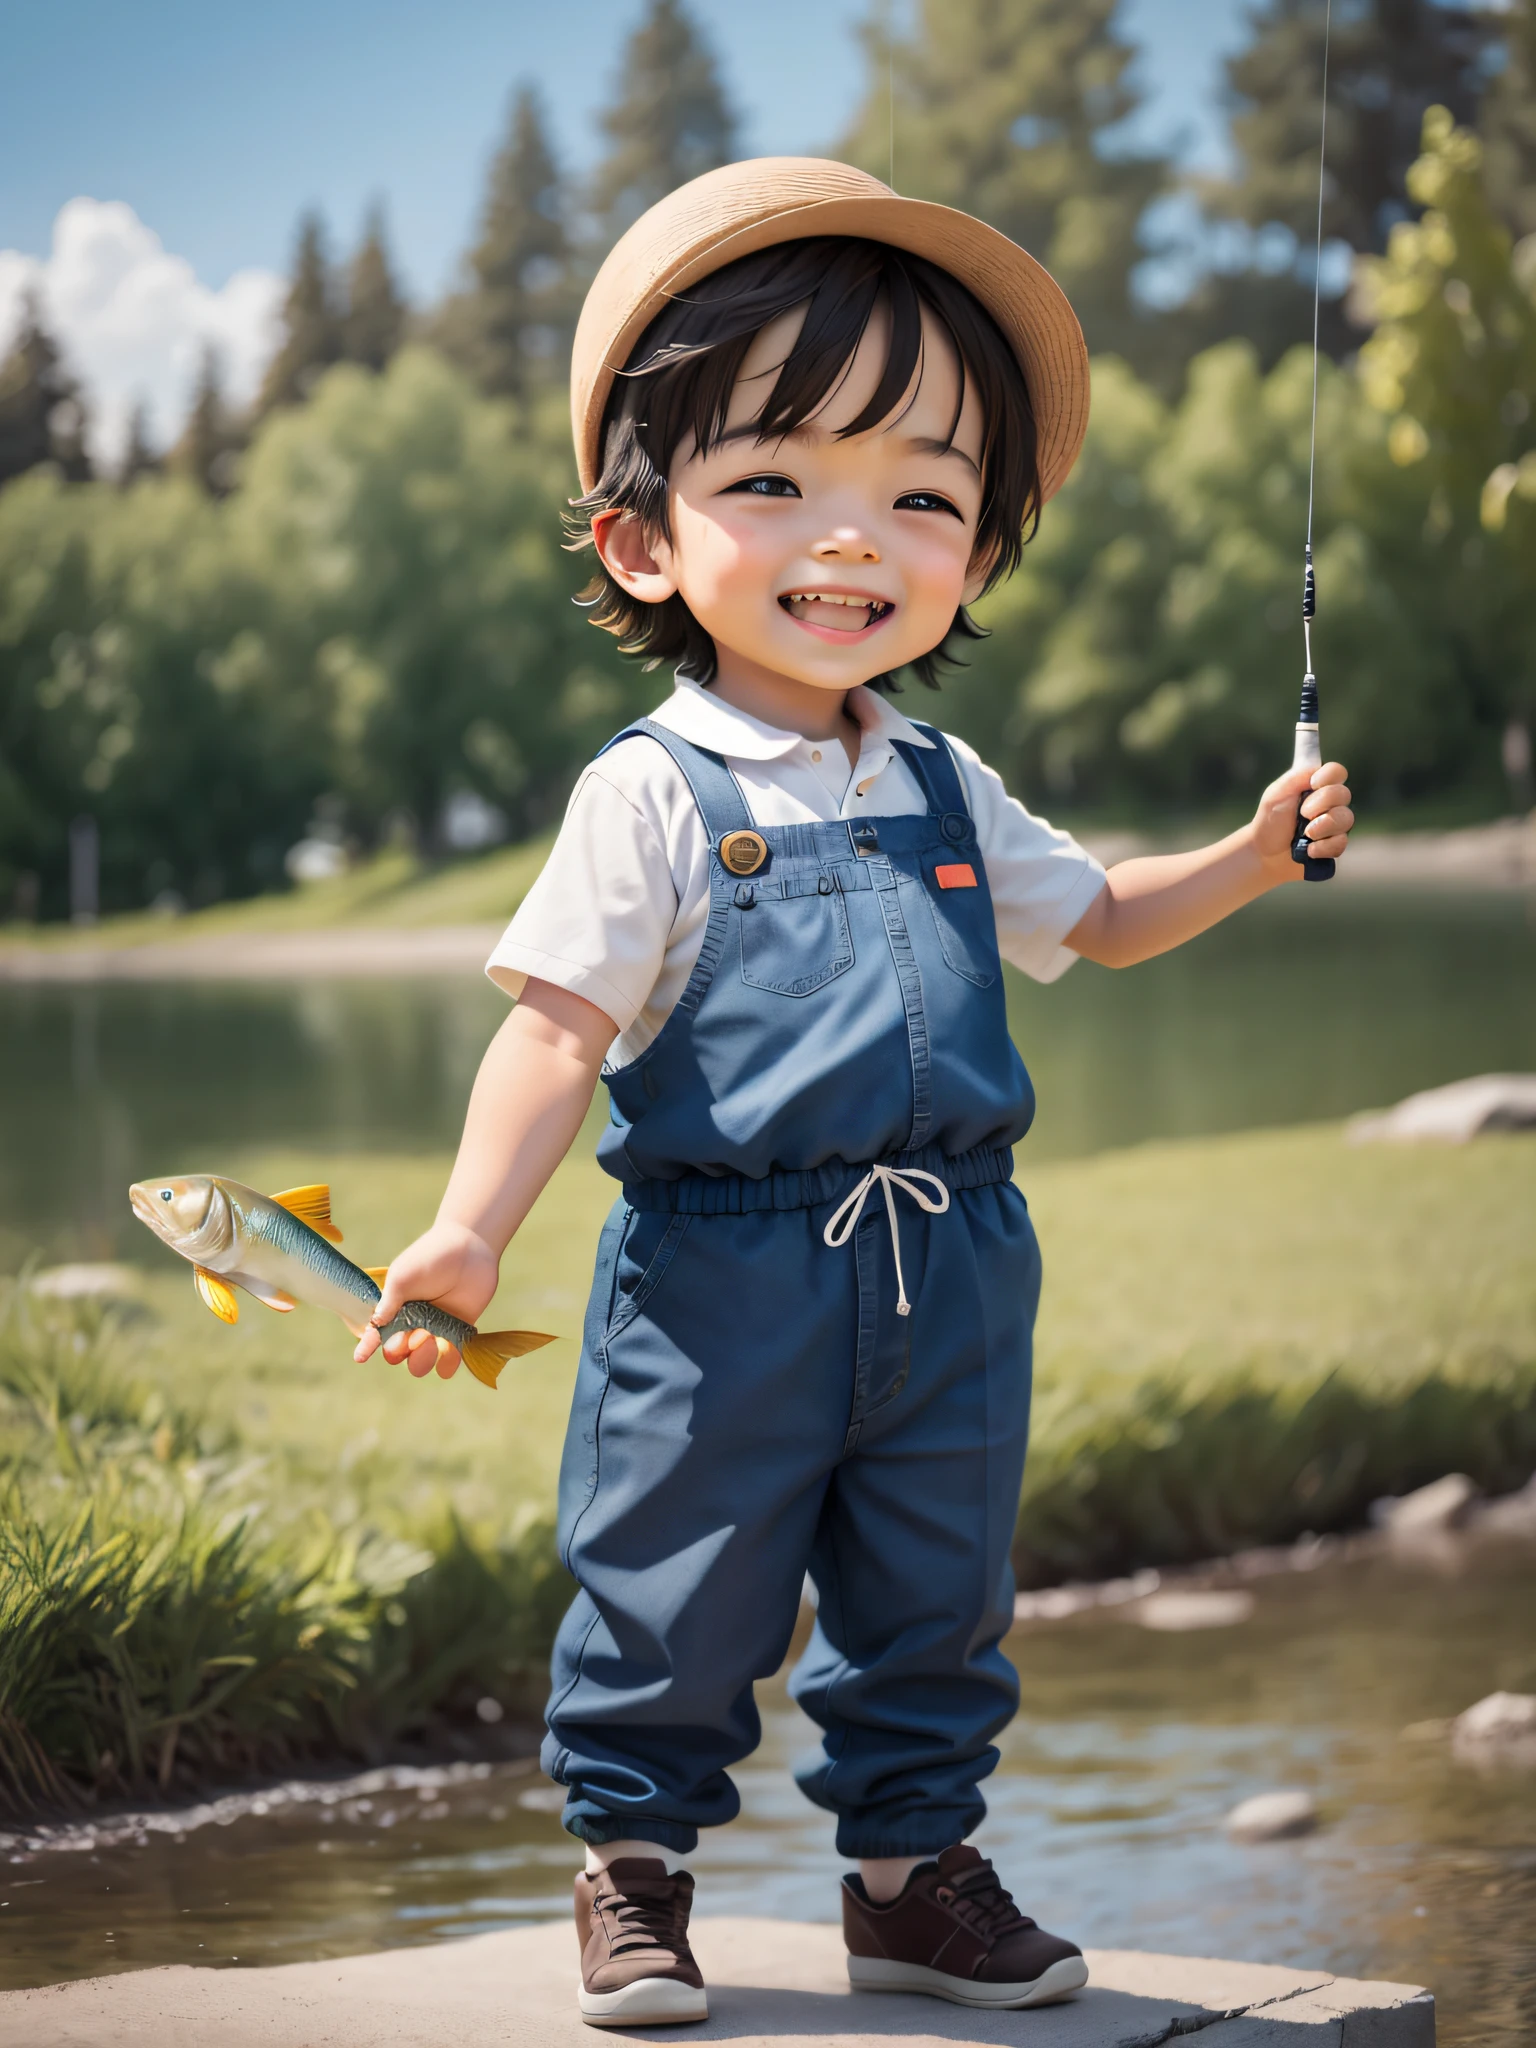 一个可爱的小男孩抓到鱼特别开心